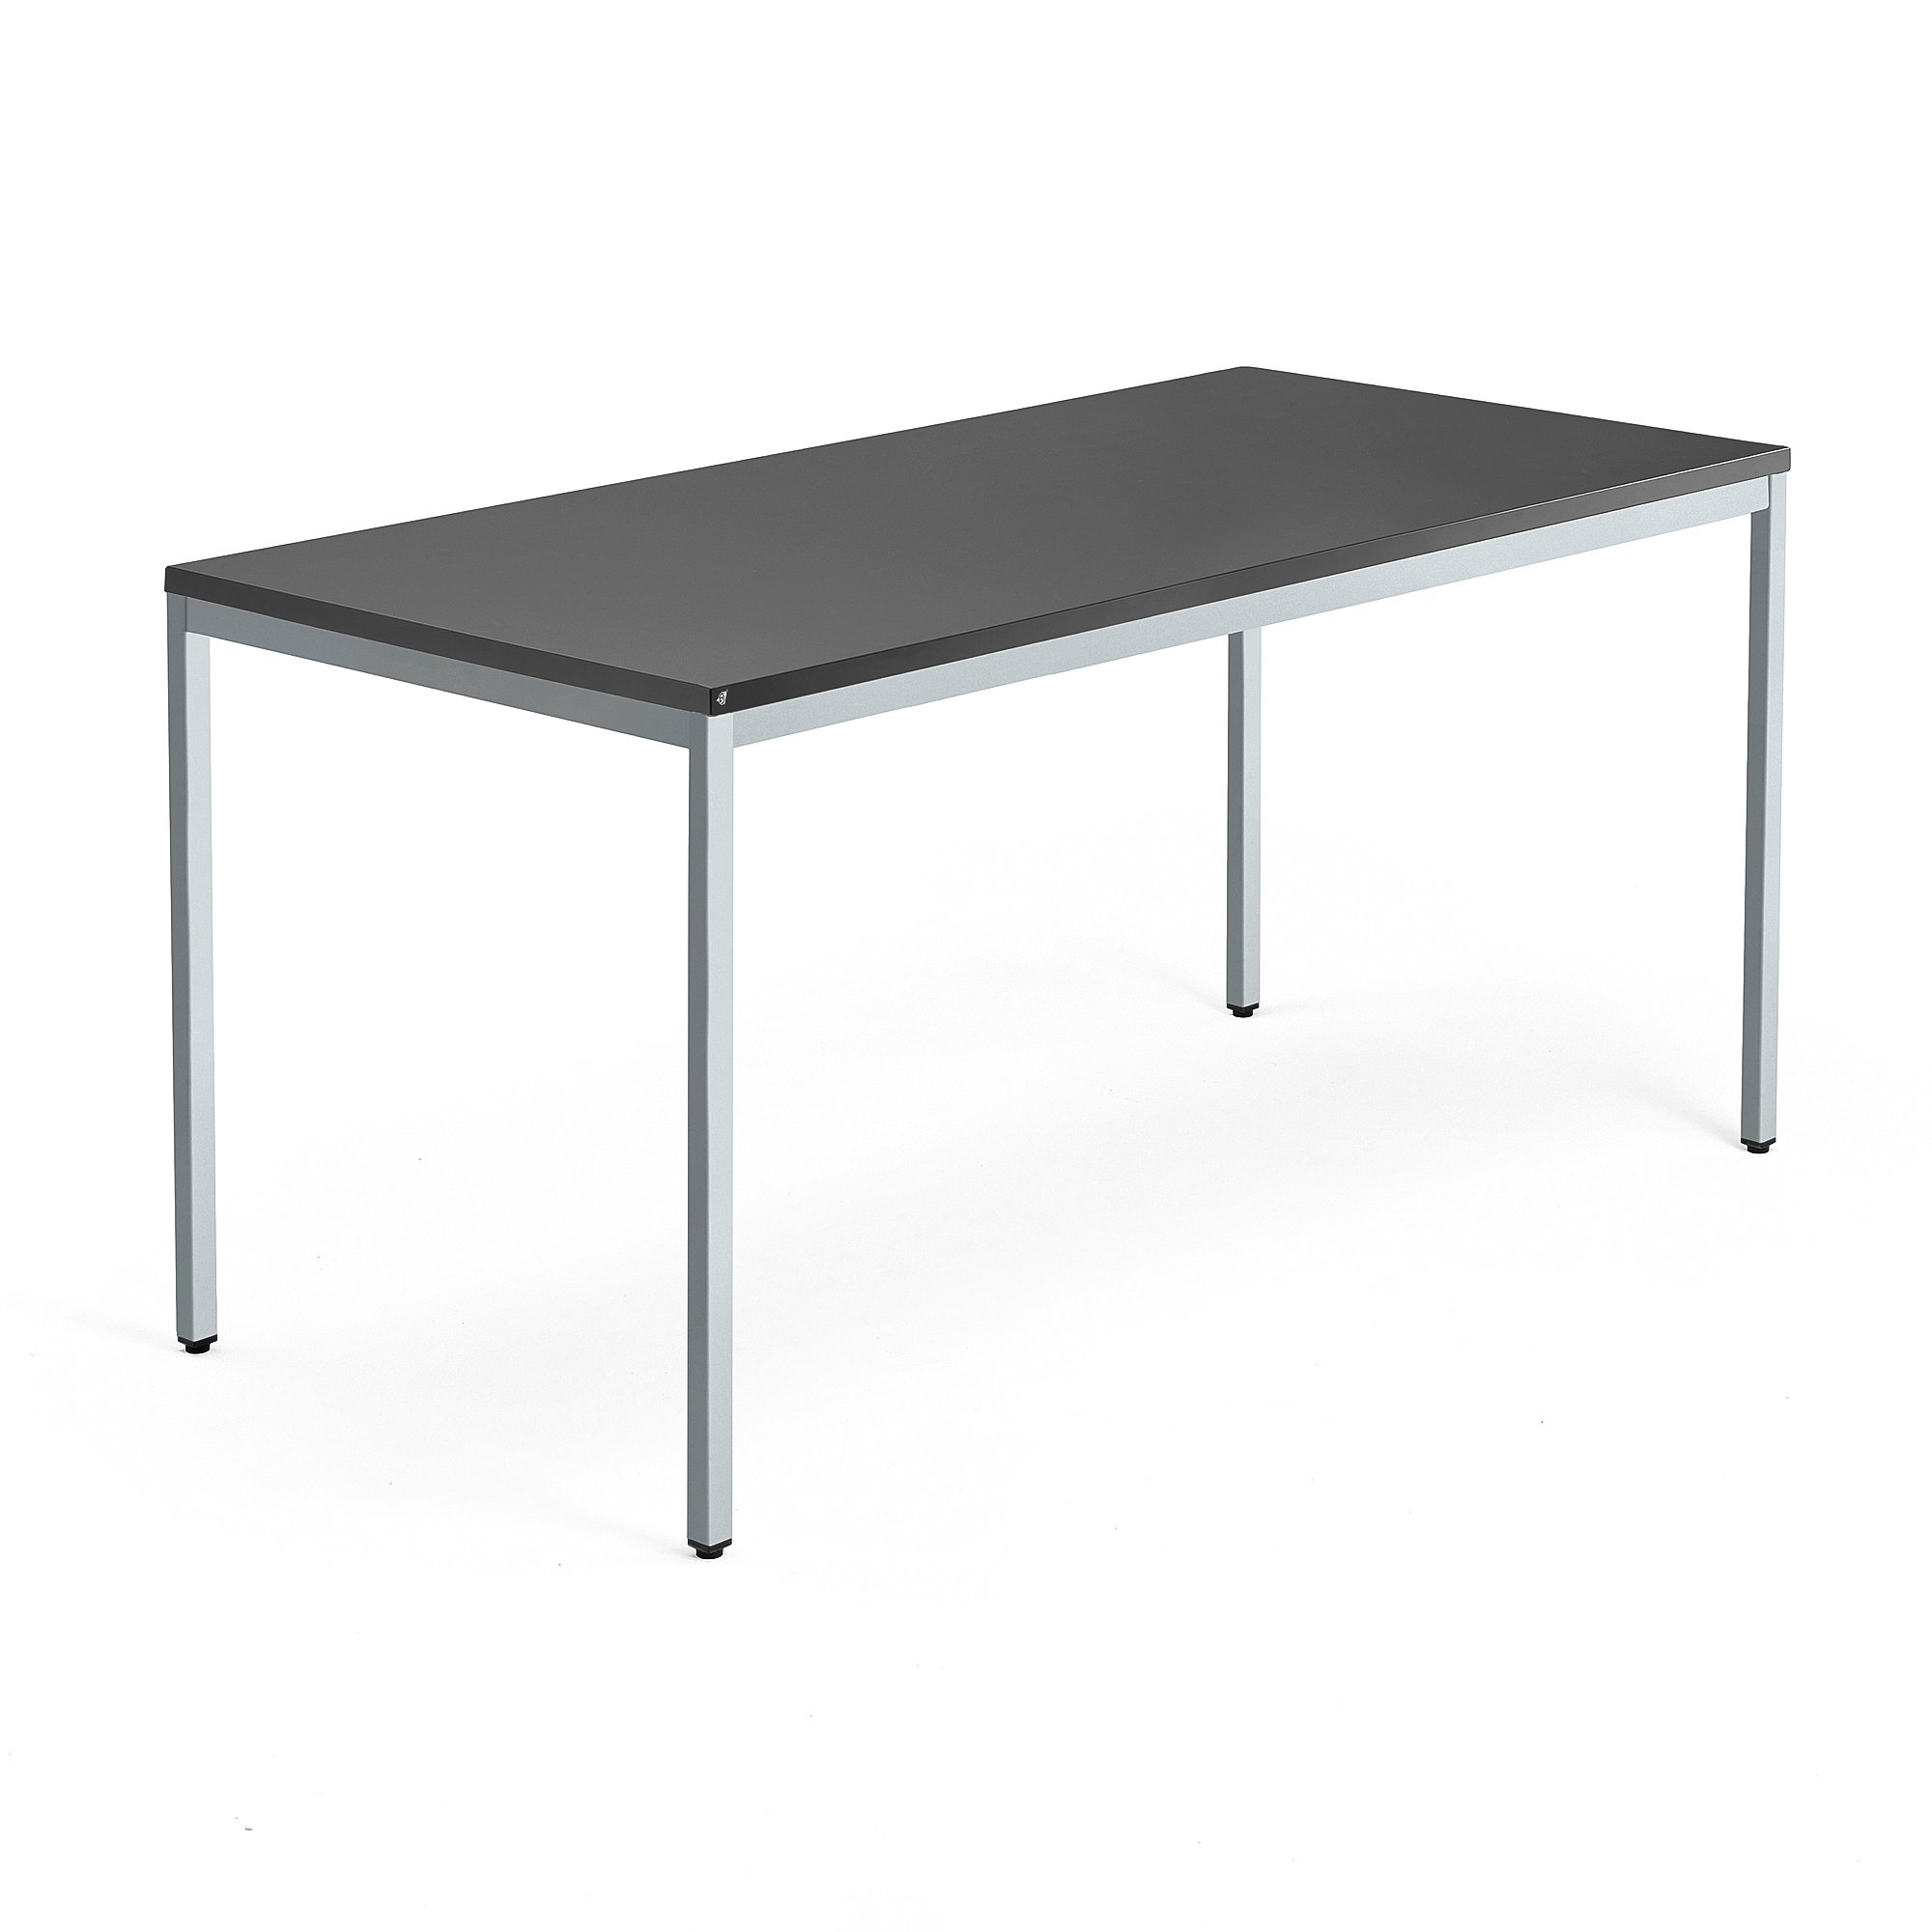 Jednací stůl QBUS, 4 nohy, 1600x800 mm, stříbrný rám, černá